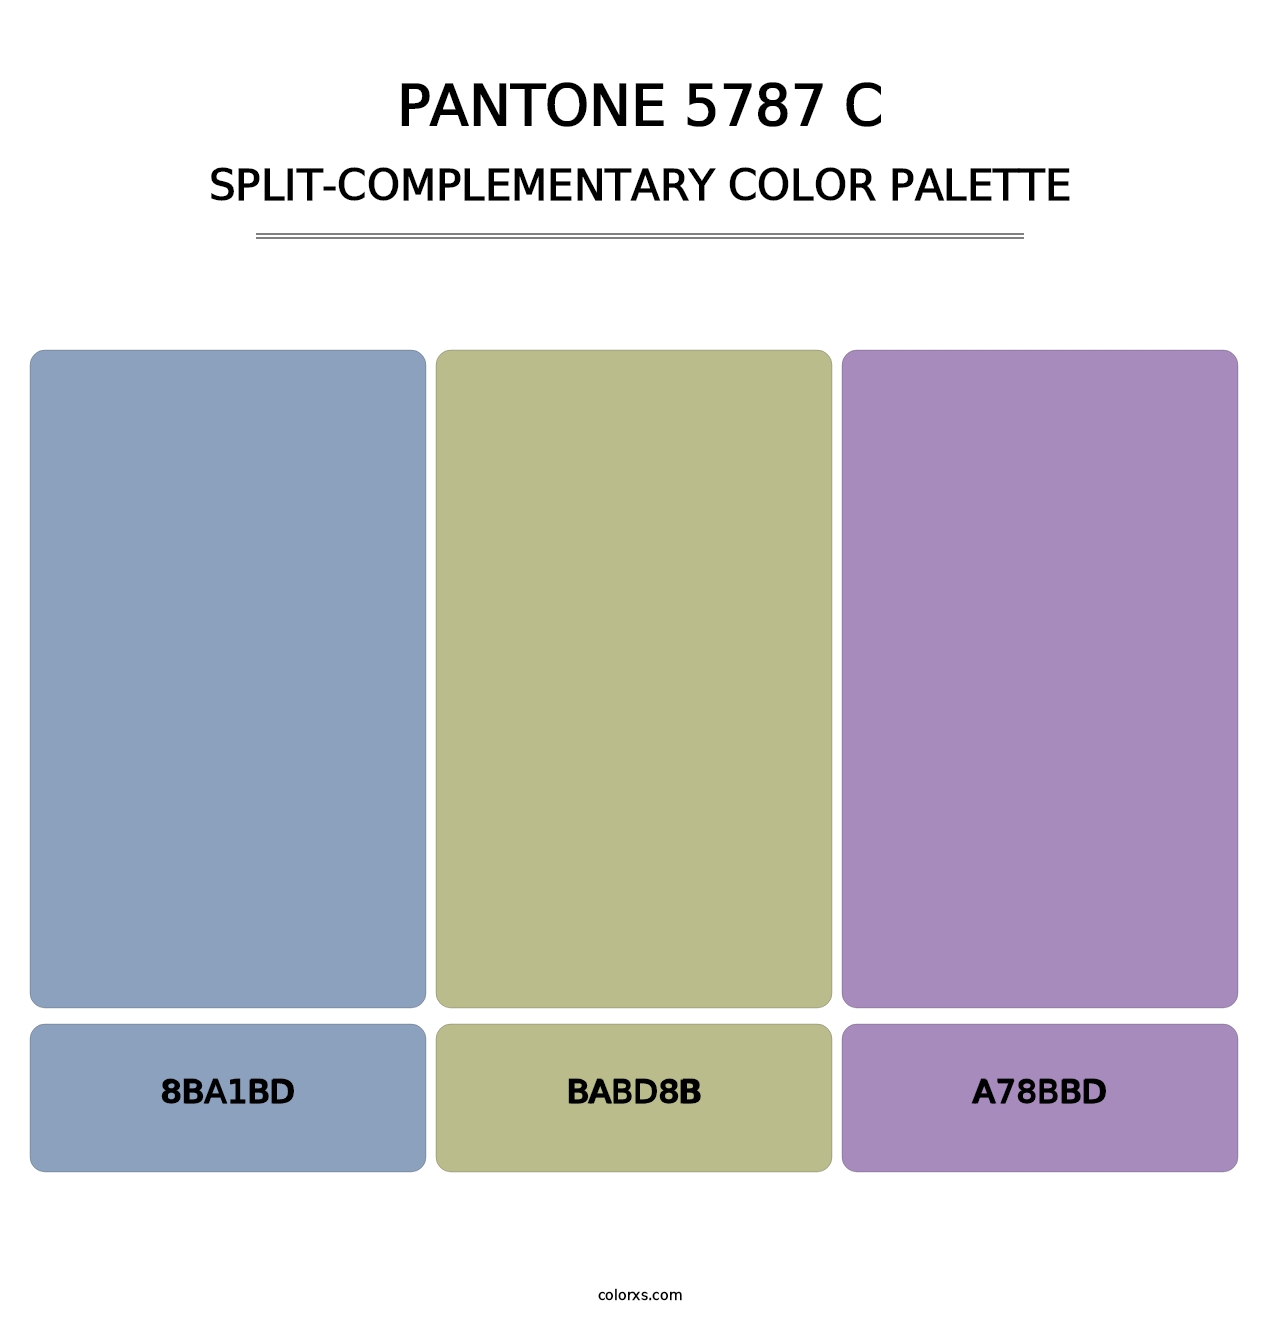 PANTONE 5787 C - Split-Complementary Color Palette